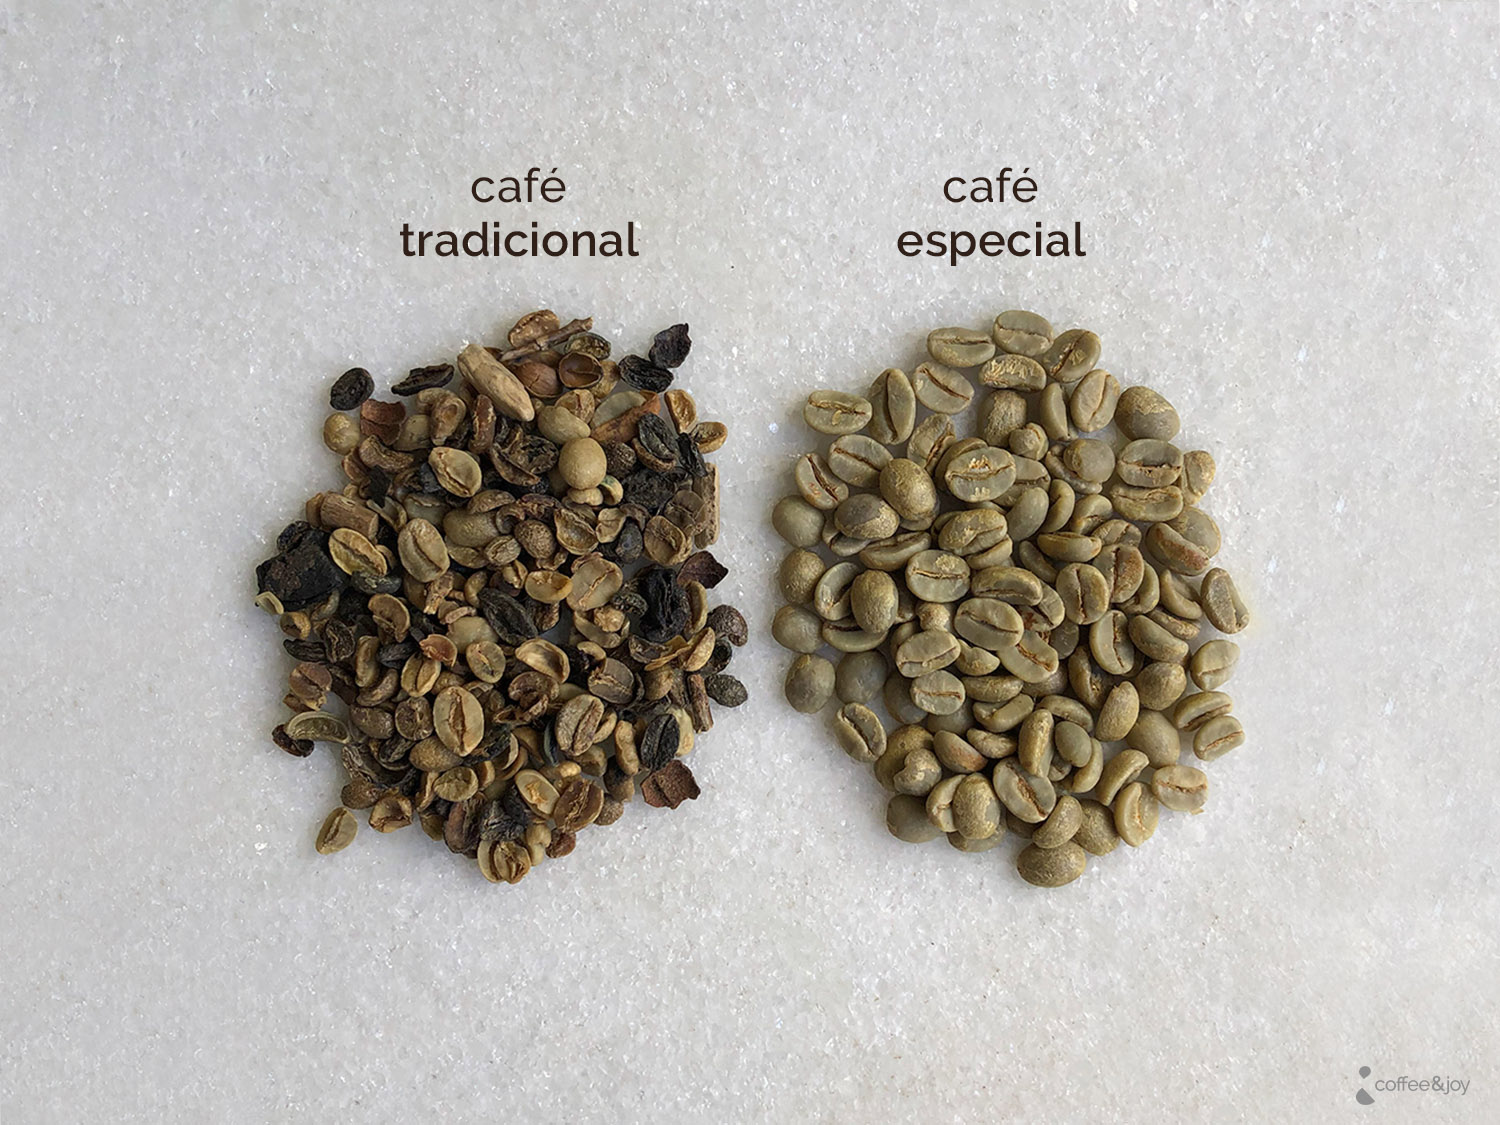 Grãos secos de café arábica (coffea arábica) e conilon (coffea